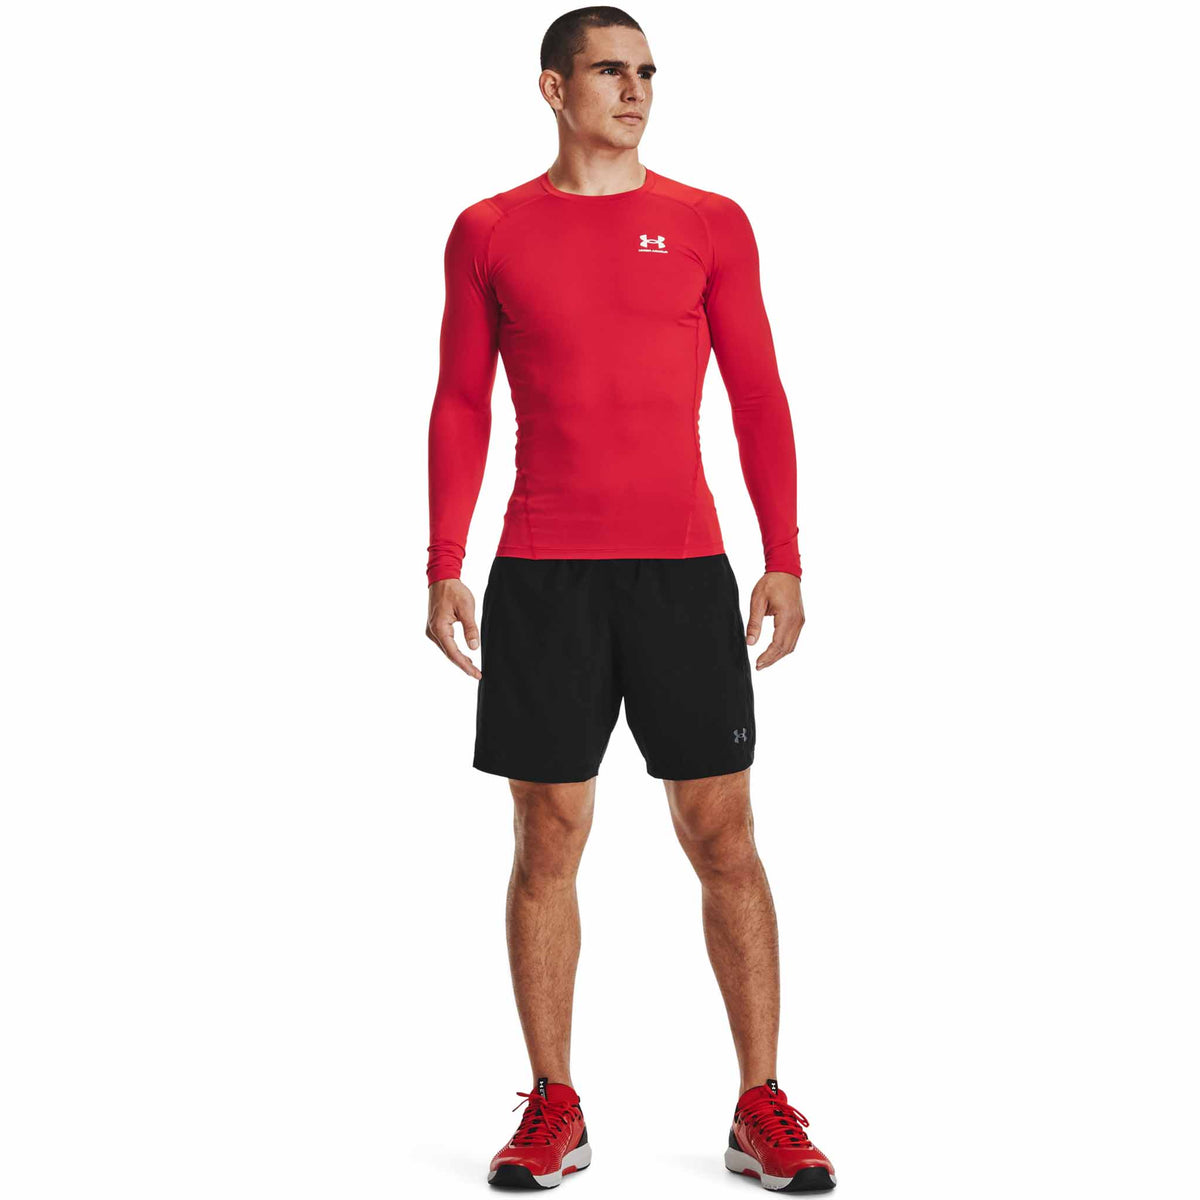 UA HeatGear Armour - Haut à manches longues pour homme - Rouge / Blanc